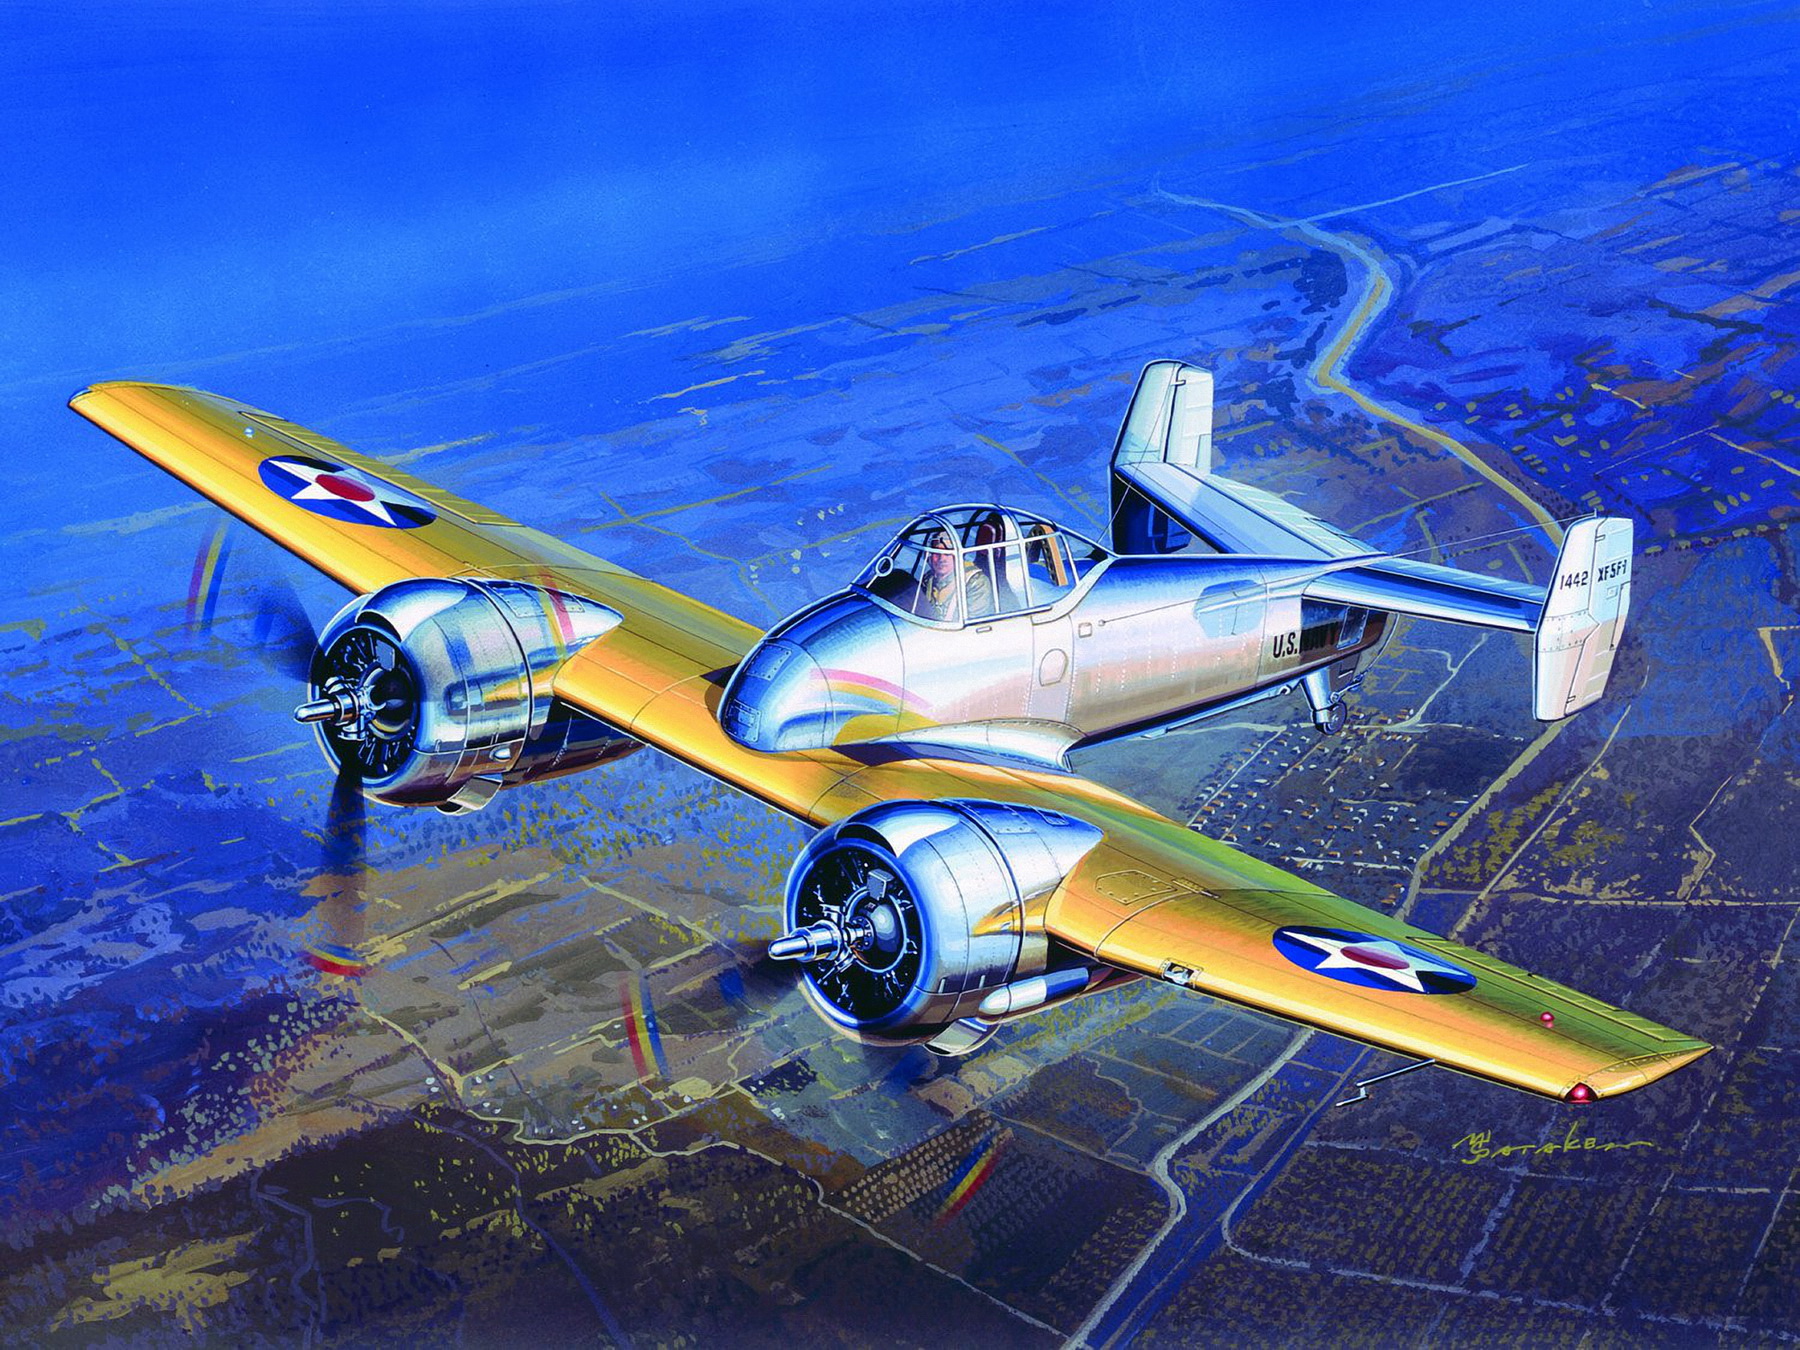 World War Ii War Military Military Aircraft Airplane Aircraft Air Force US Air Force USA 1800x1350